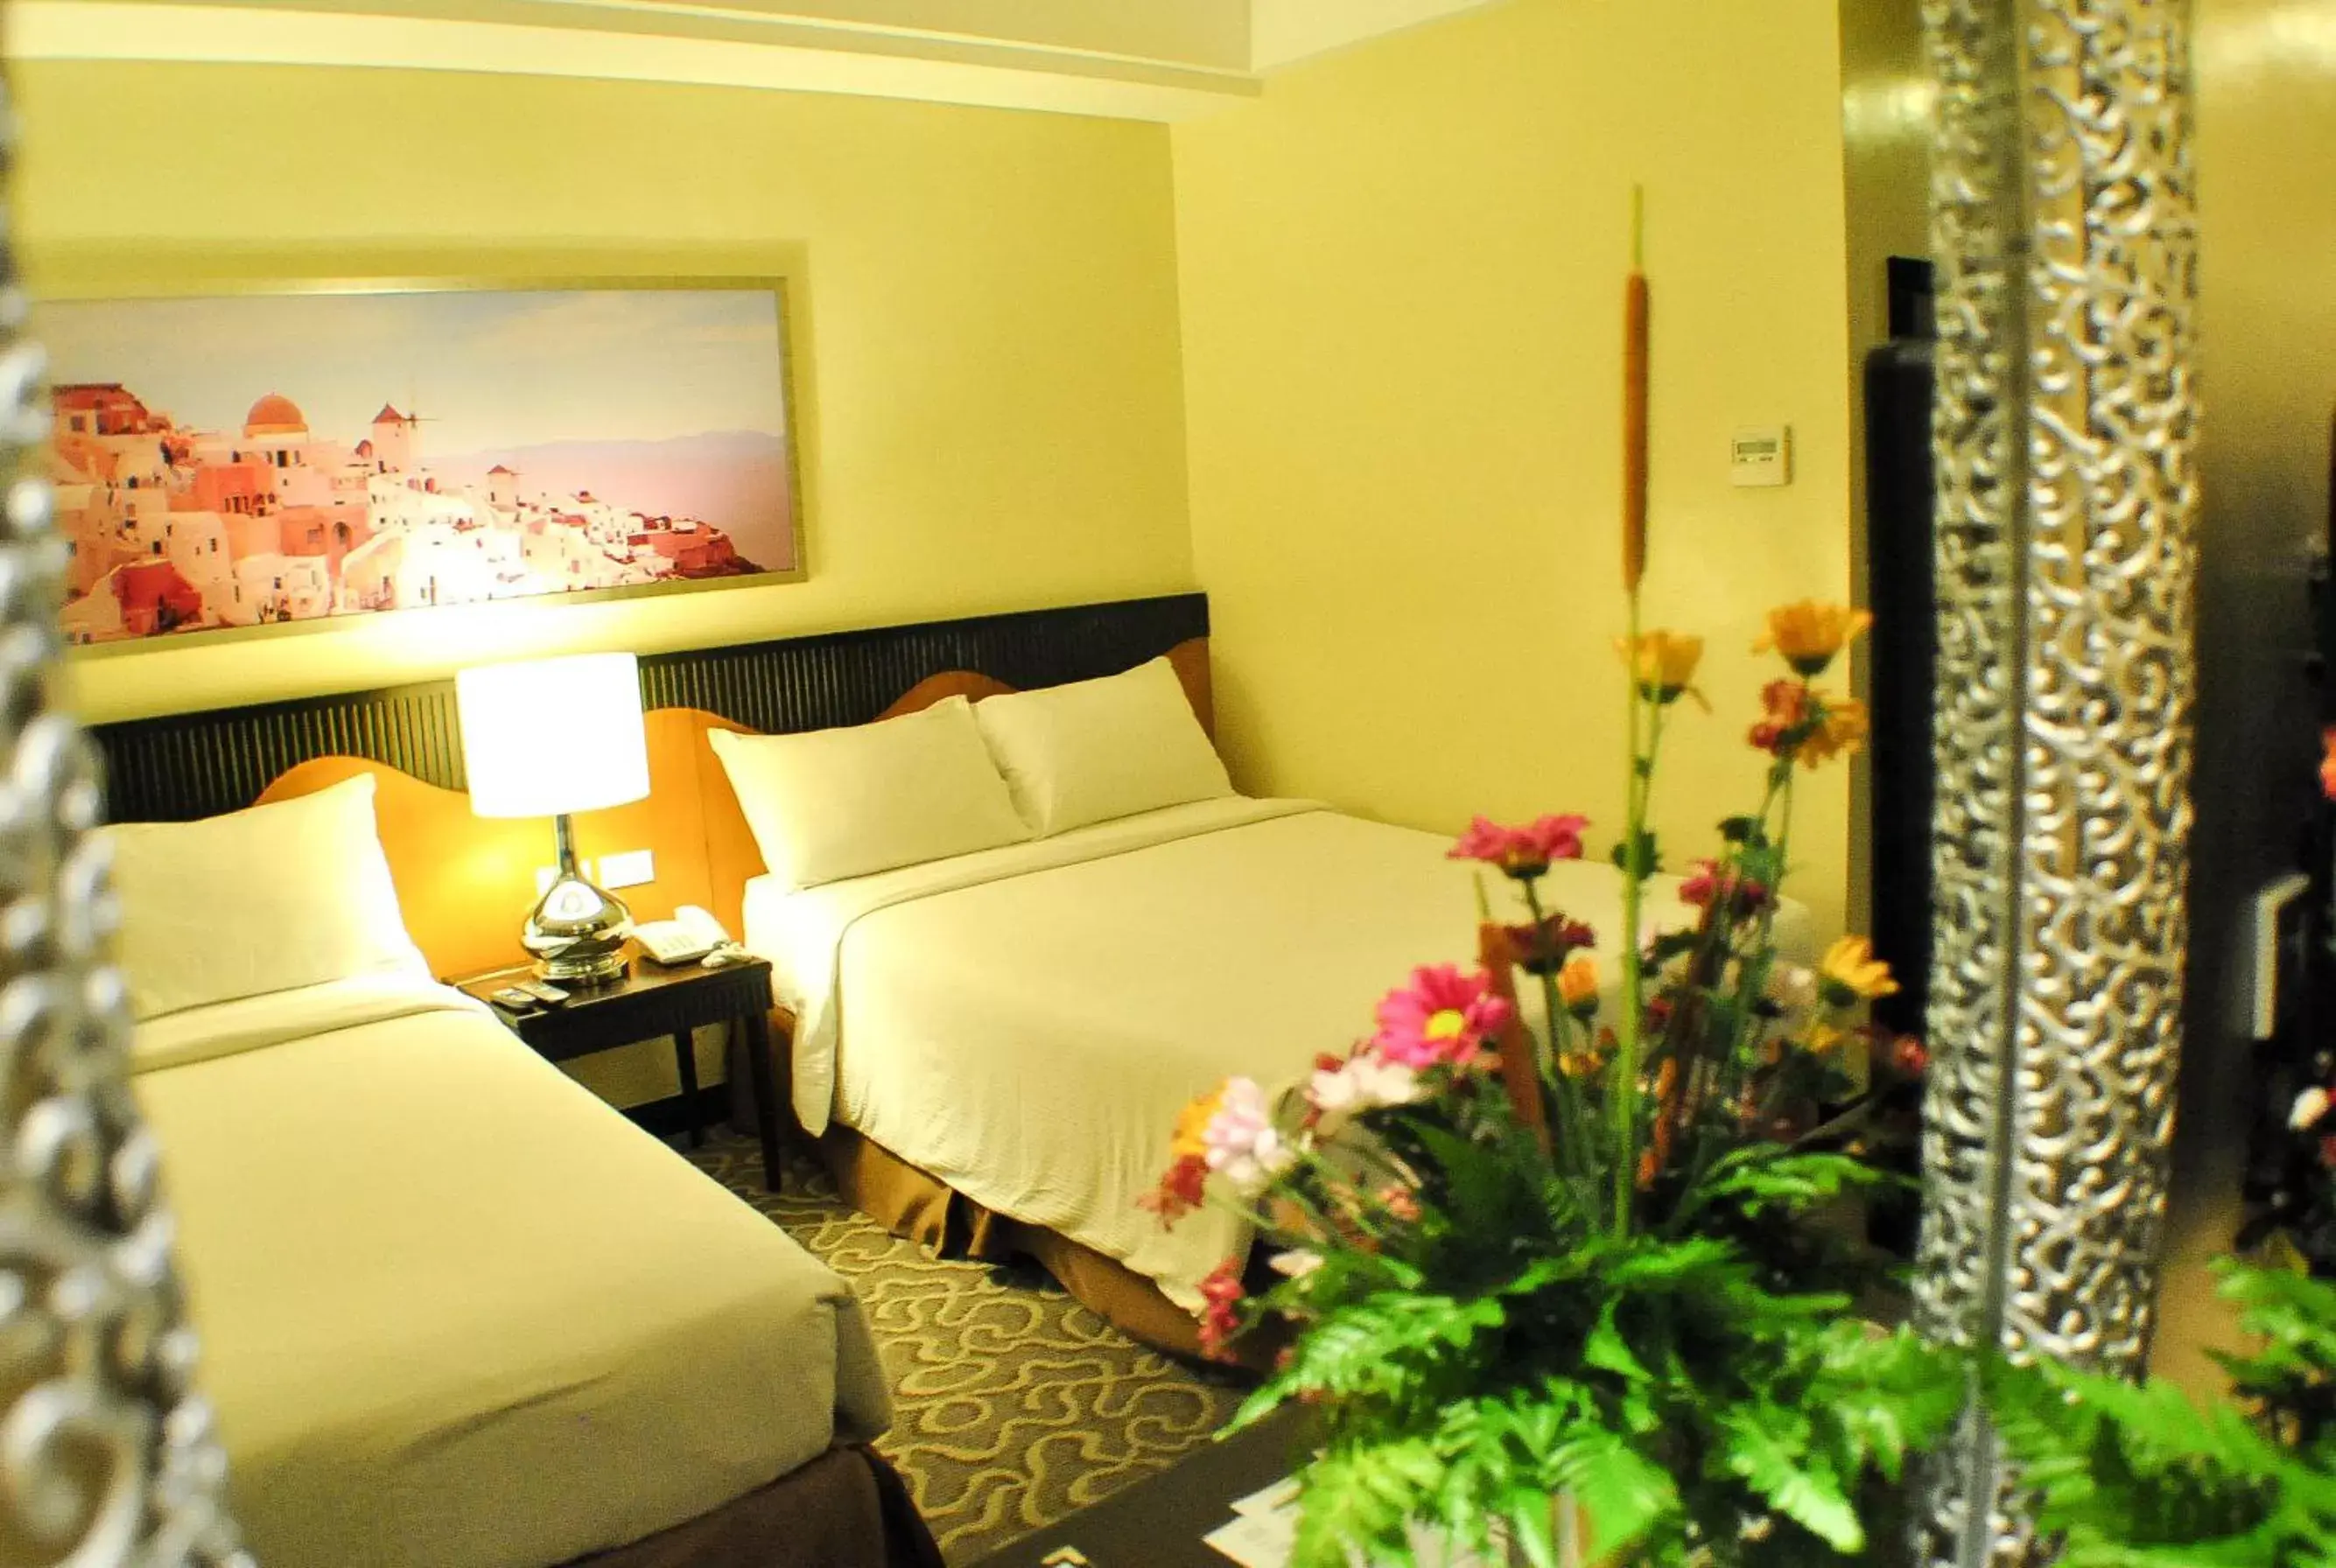 Bed in Hotel Elizabeth Cebu